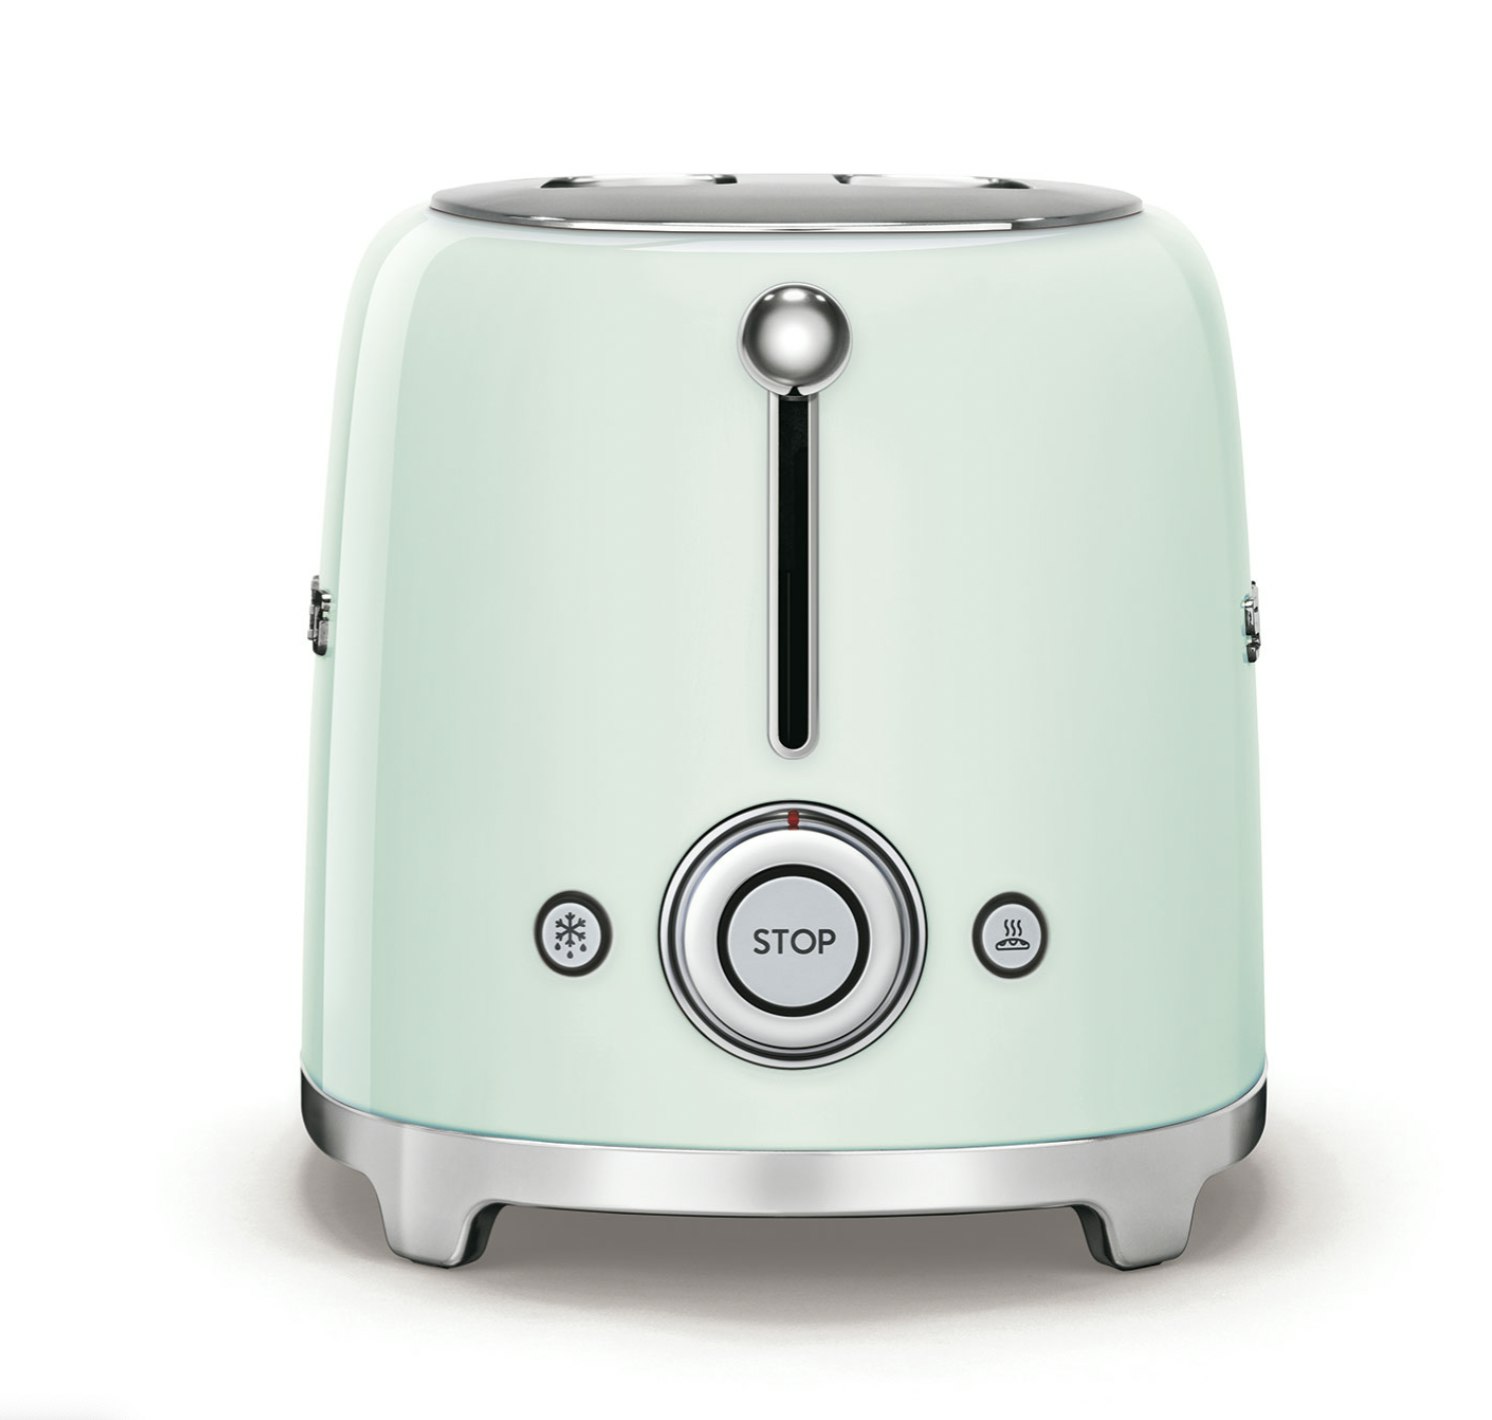 Smeg 2-Slice Toaster - Pastel Green, SMEG Appliances | HipVan